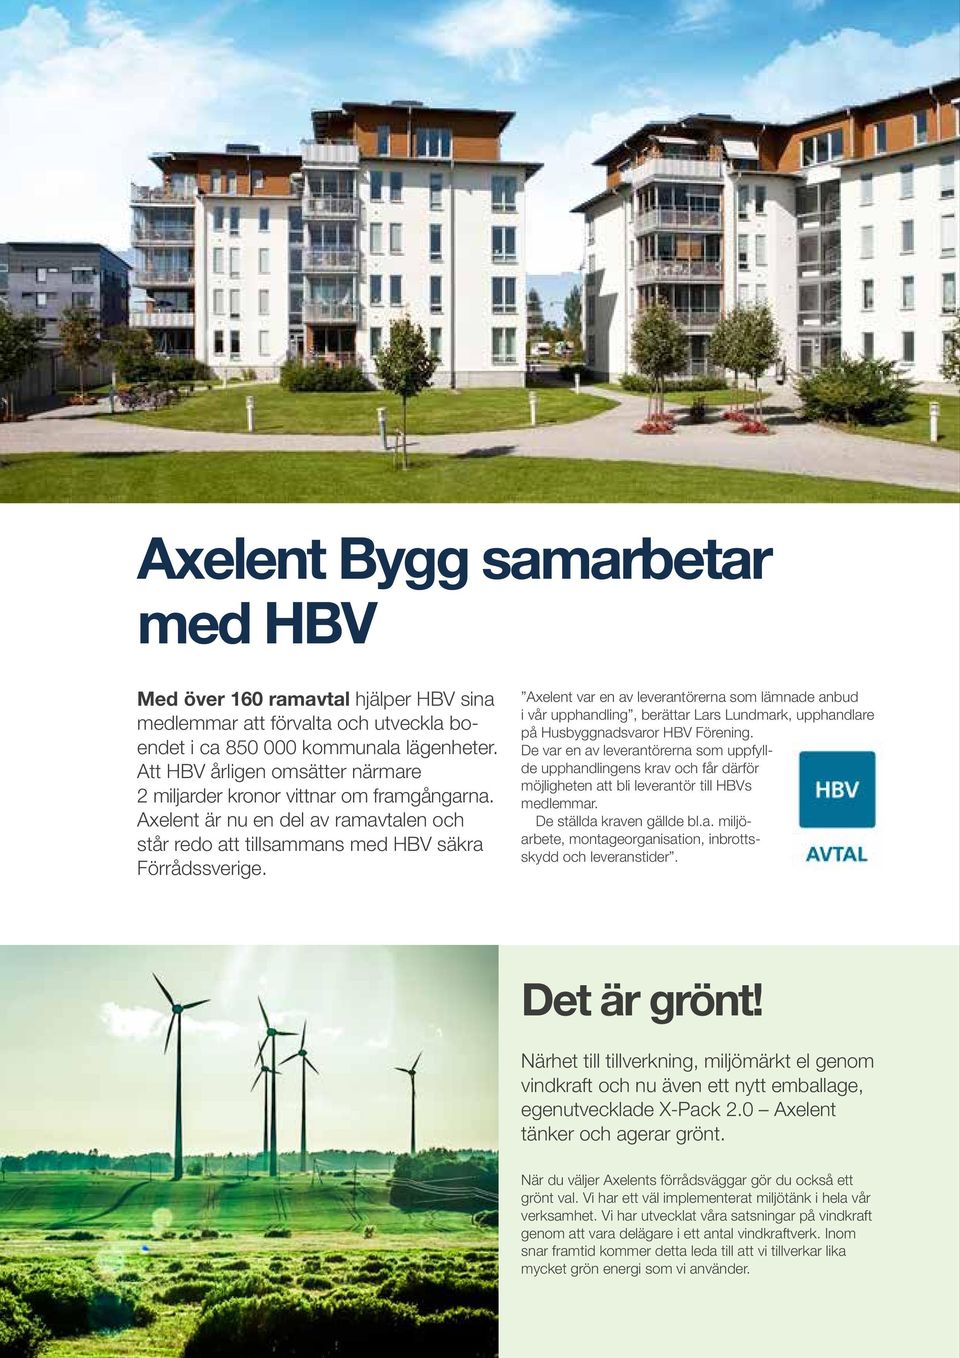 Axelent var en av leverantörerna som lämnade anbud i vår upphandling, berättar Lars Lundmark, upphandlare på Husbyggnadsvaror HBV Förening.